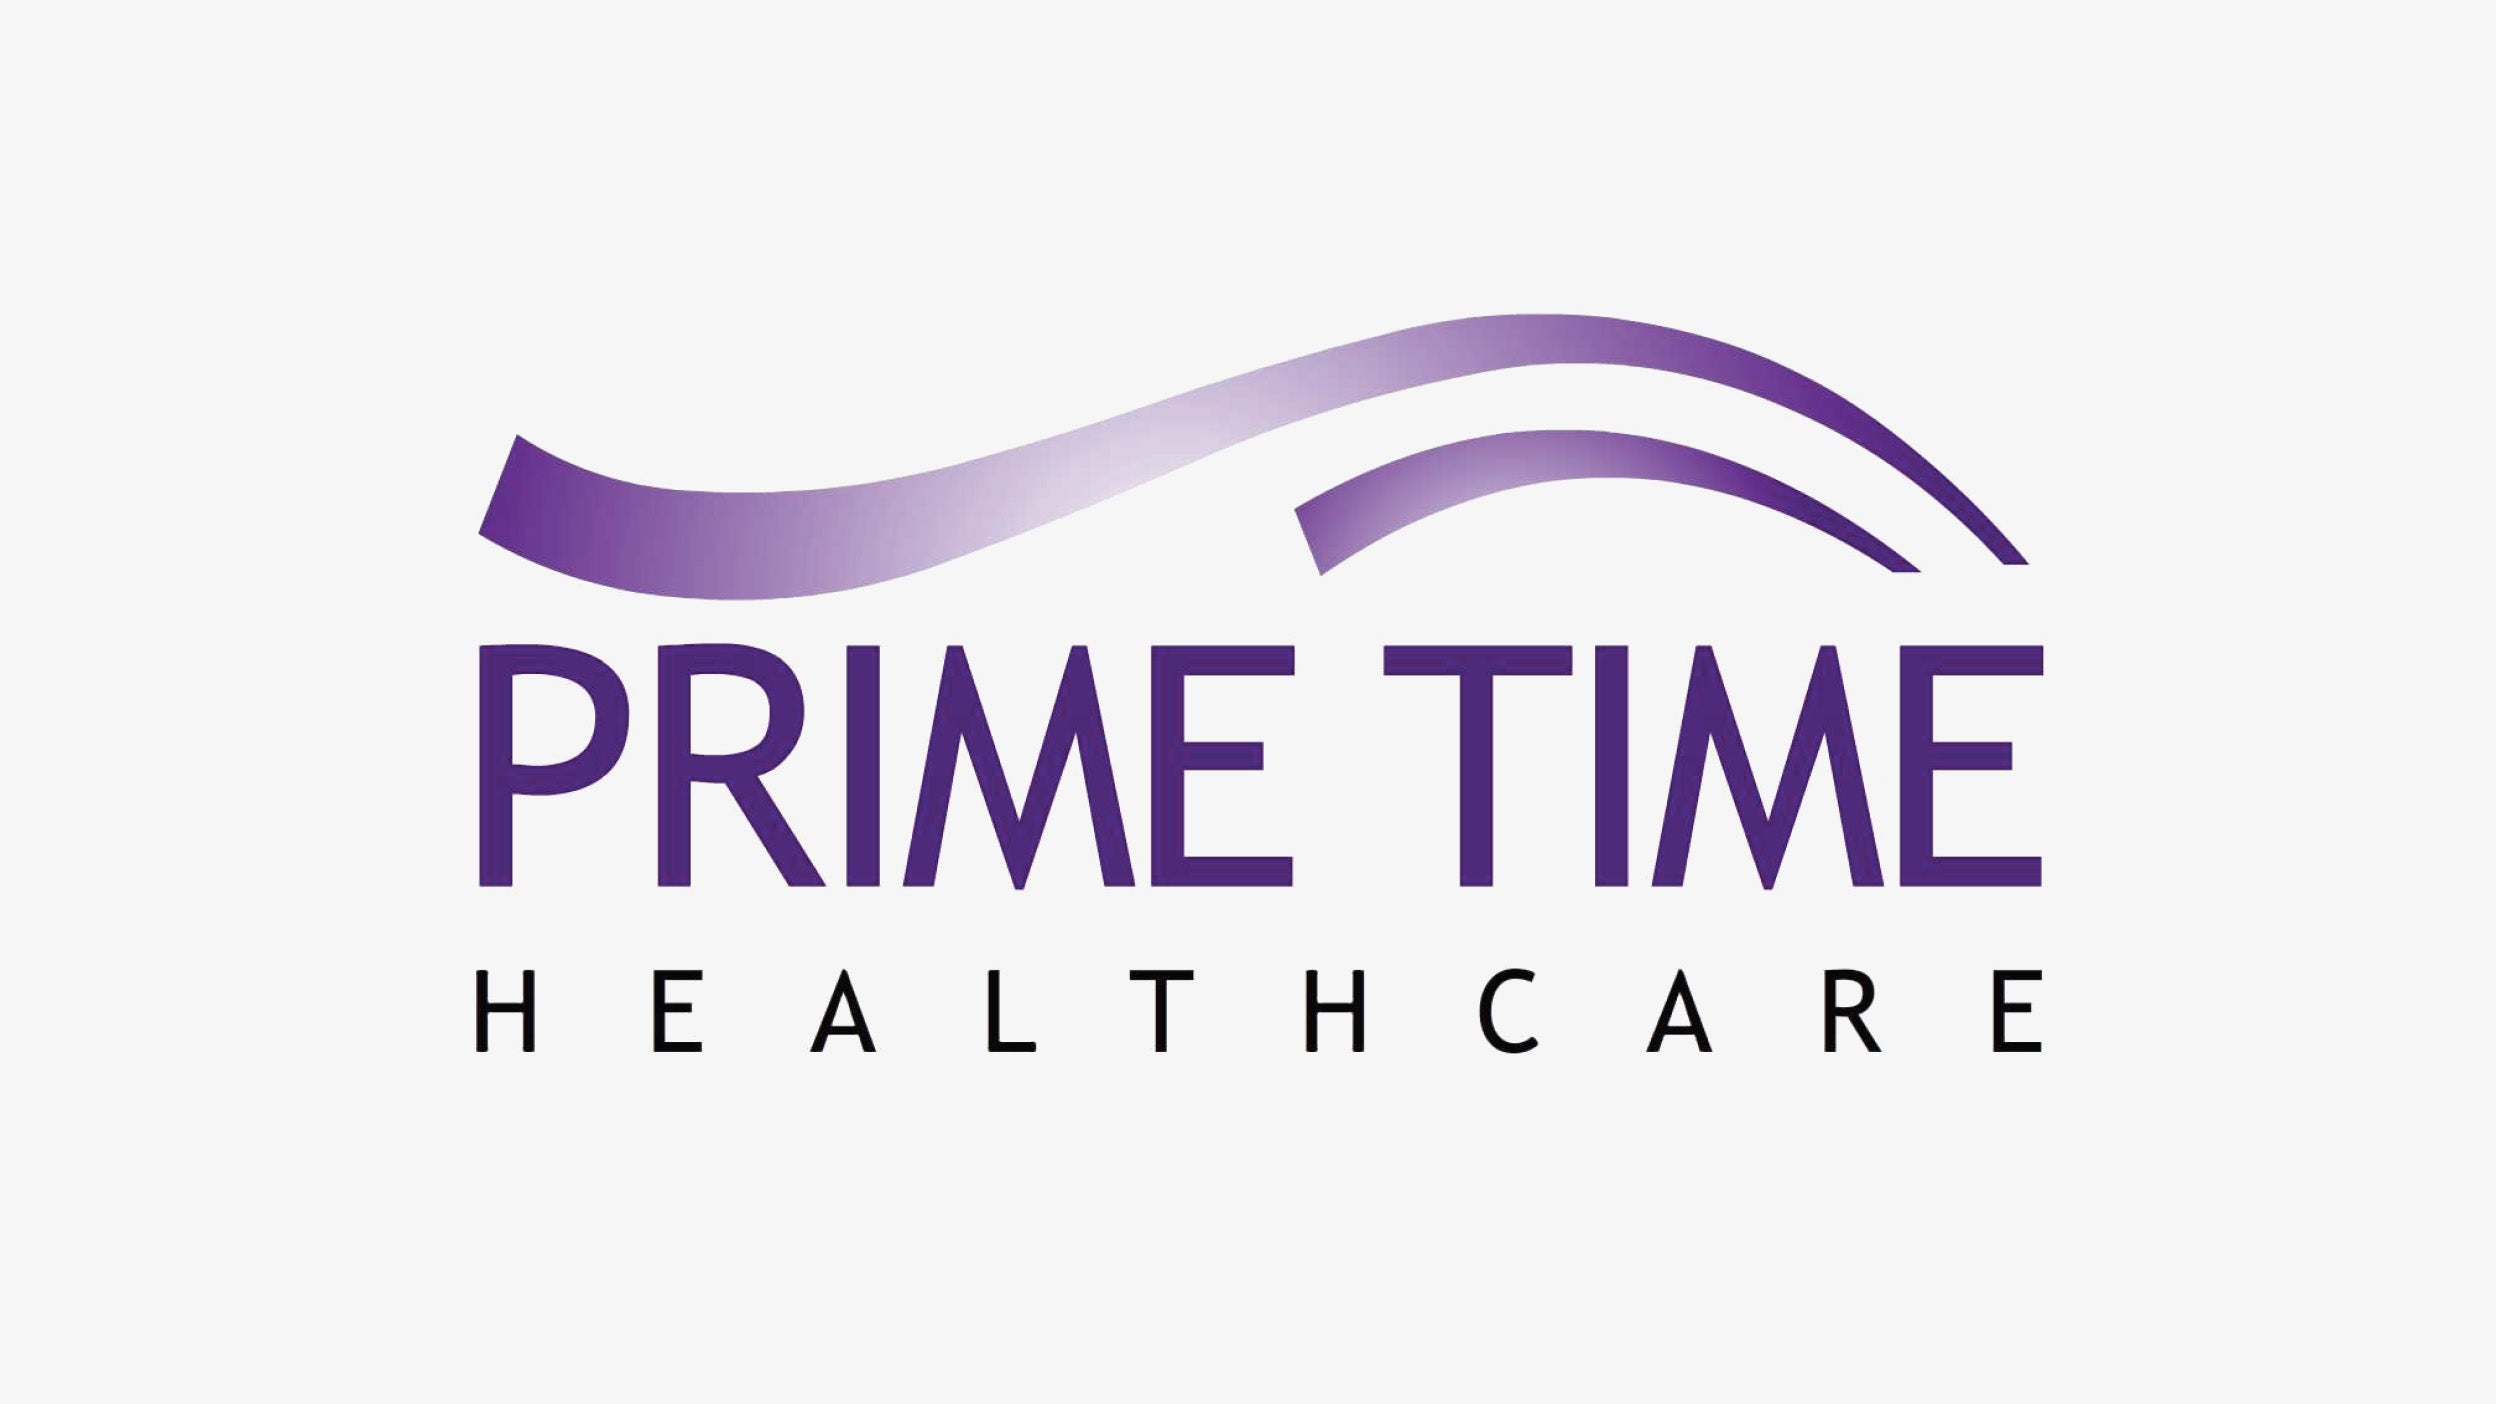 Primetime Healthcare